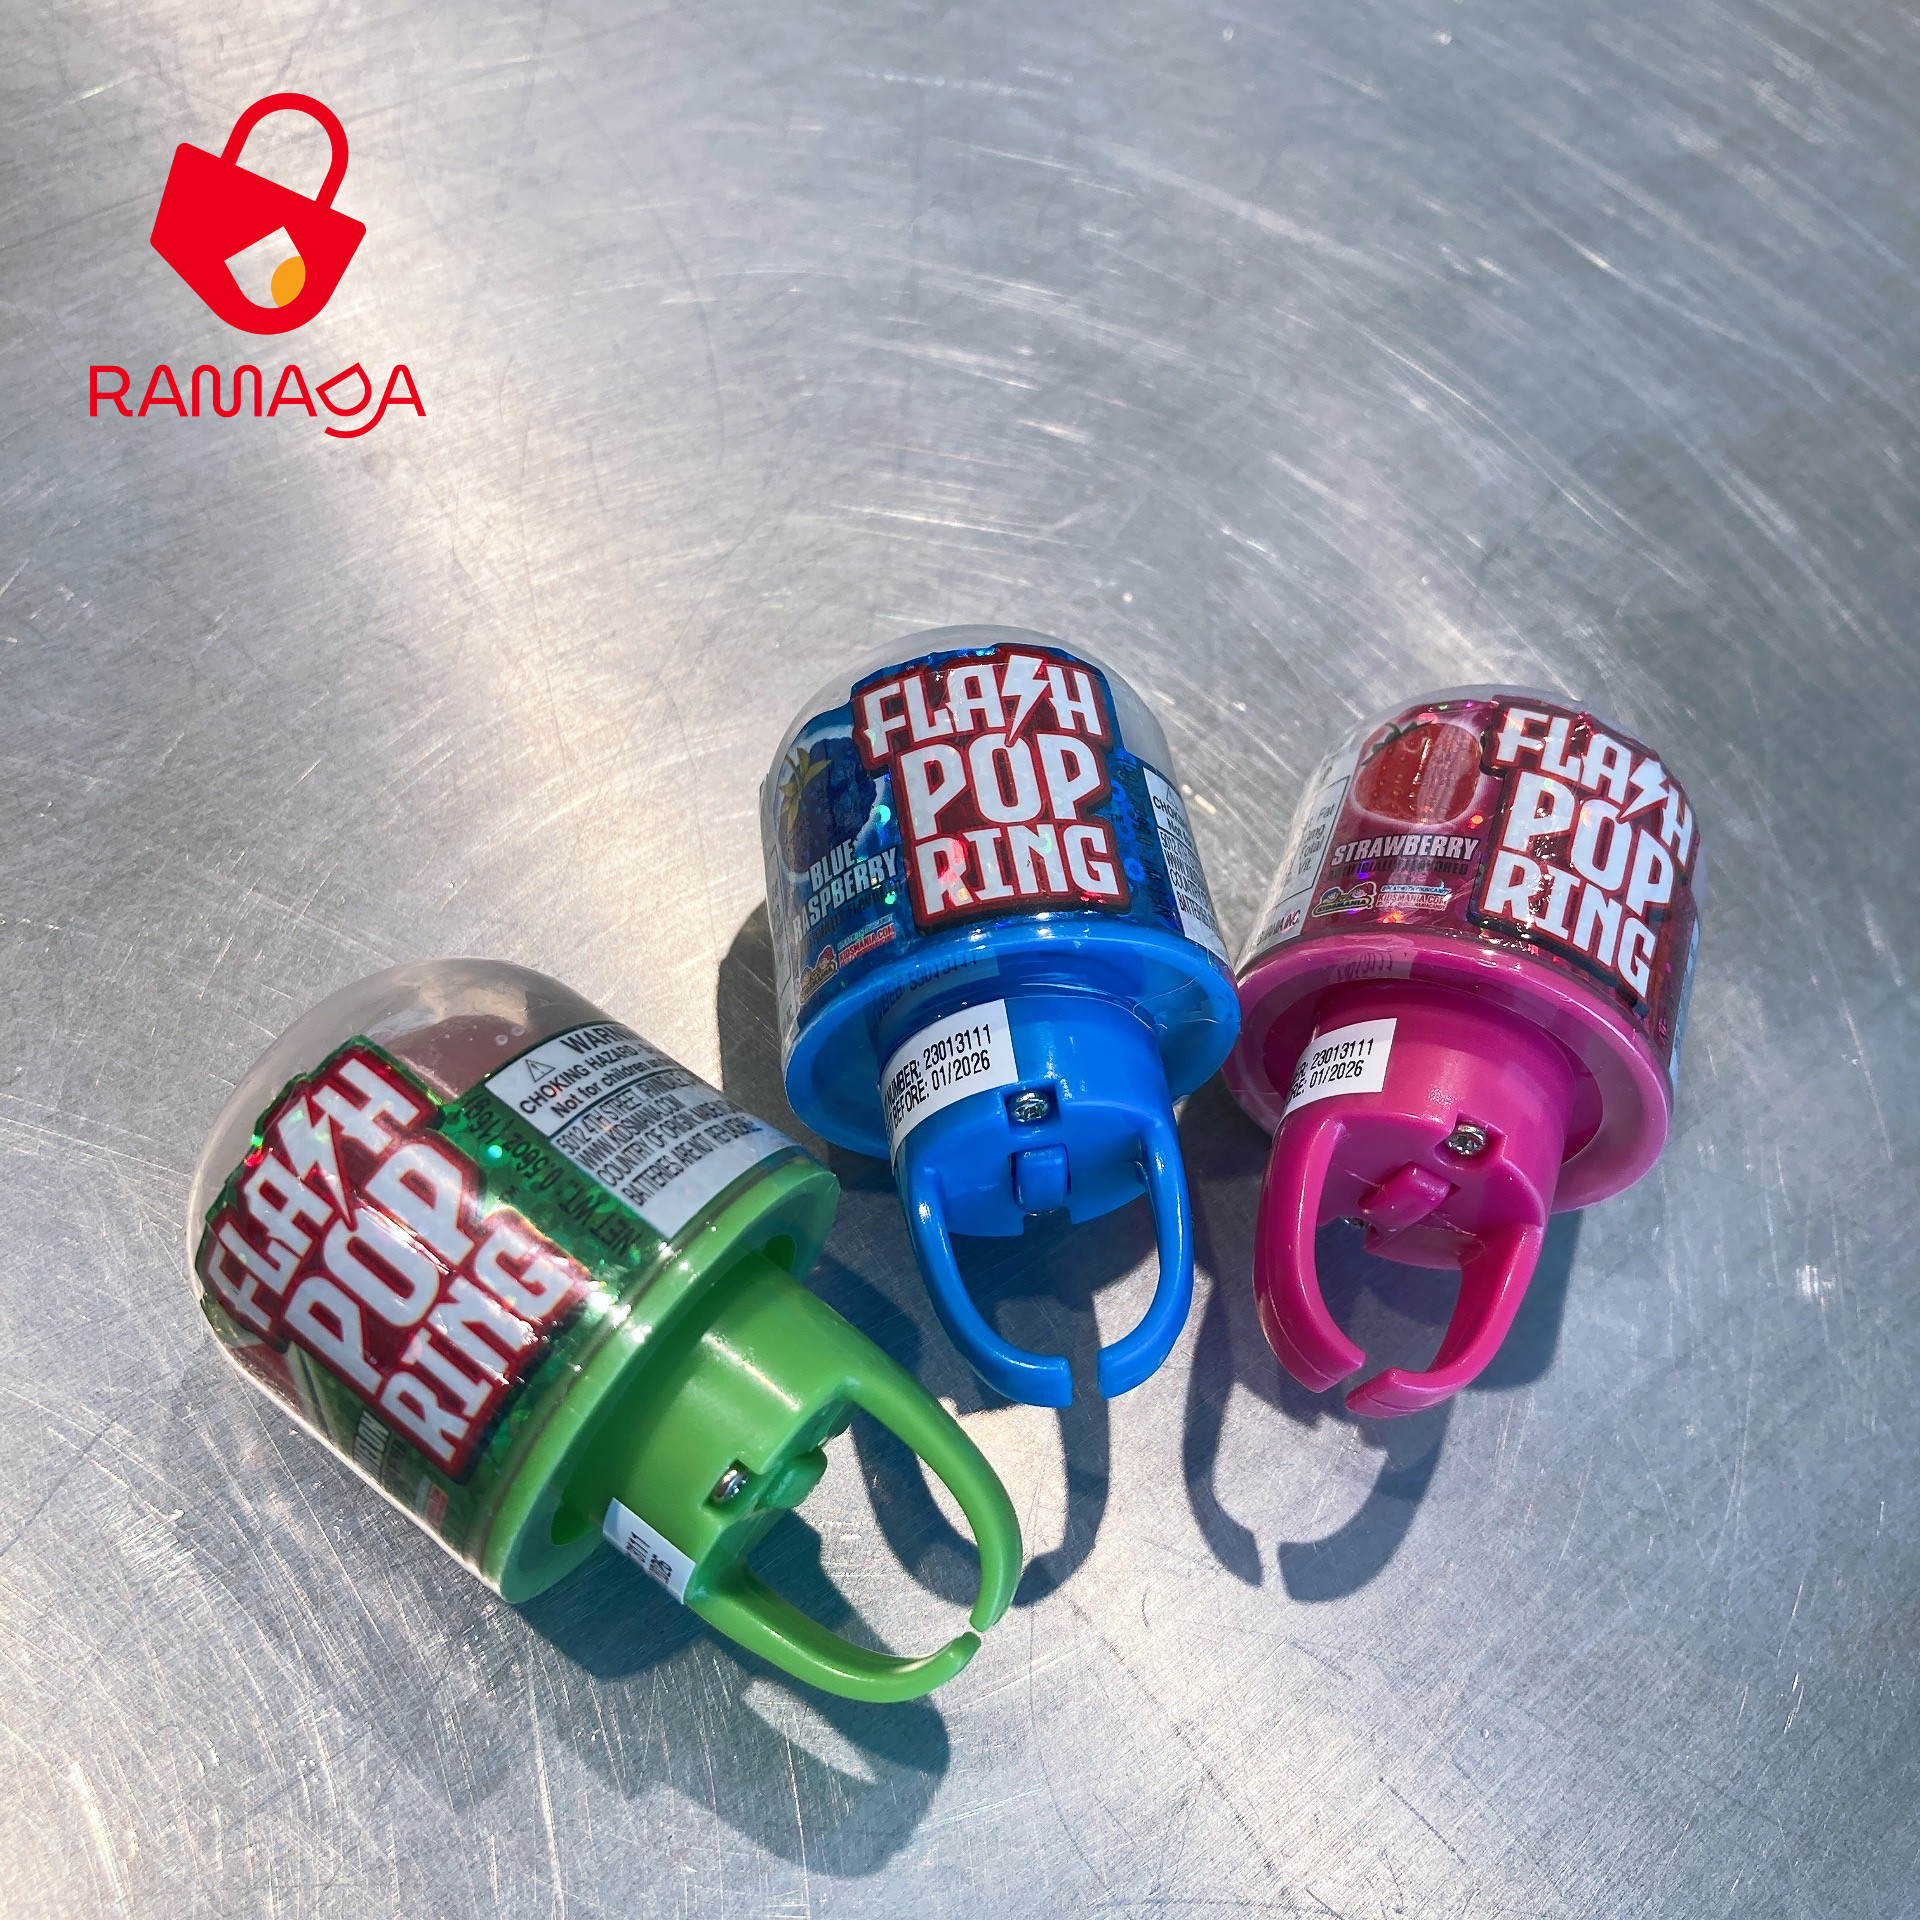 Ramada - Kẹo mút kèm đồ chơi chiếc nhẫn phát sáng Kidsmania, Dành cho Bé